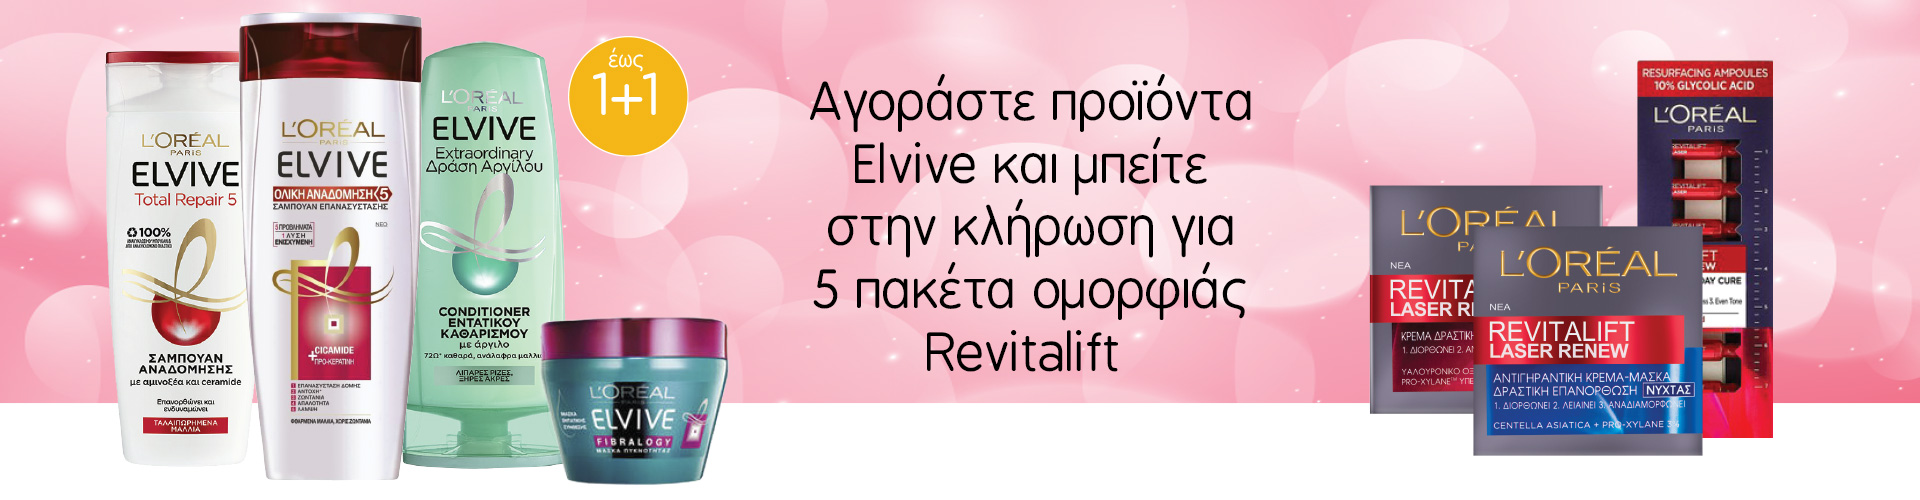 Αγοράζοντας προϊόντα Elvive μπείτε στην κλήρωση για 5 πακέτα ομορφιάς Revitalift